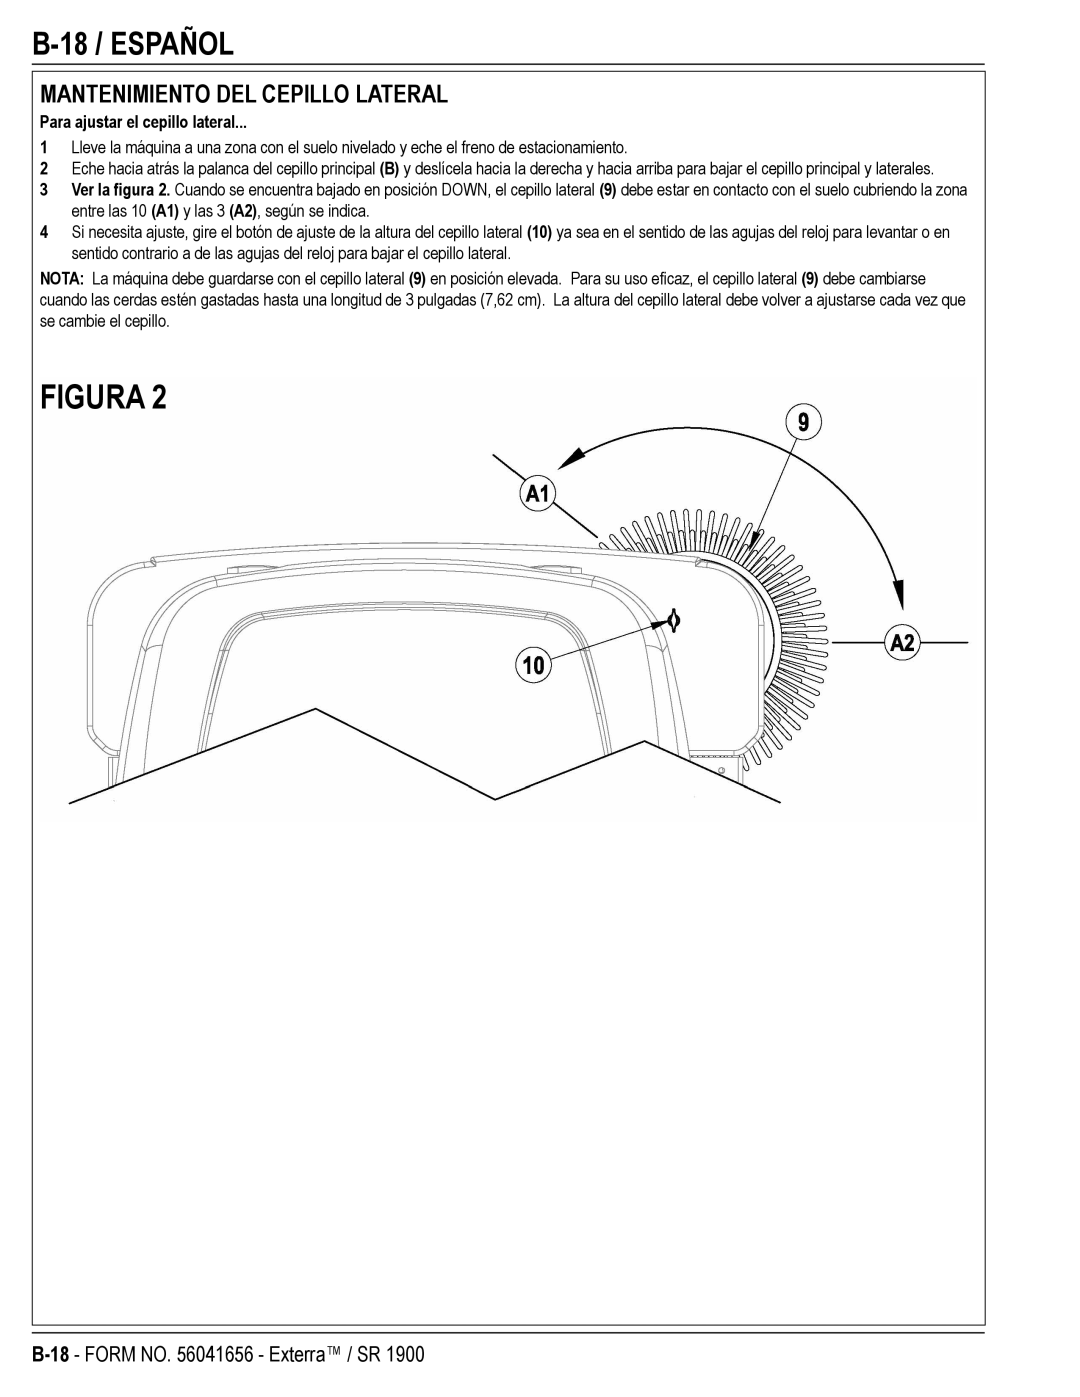 Nilfisk-ALTO SR 1900 manual 18 / Español, Mantenimiento DEL Cepillo Lateral, Para ajustar el cepillo lateral 